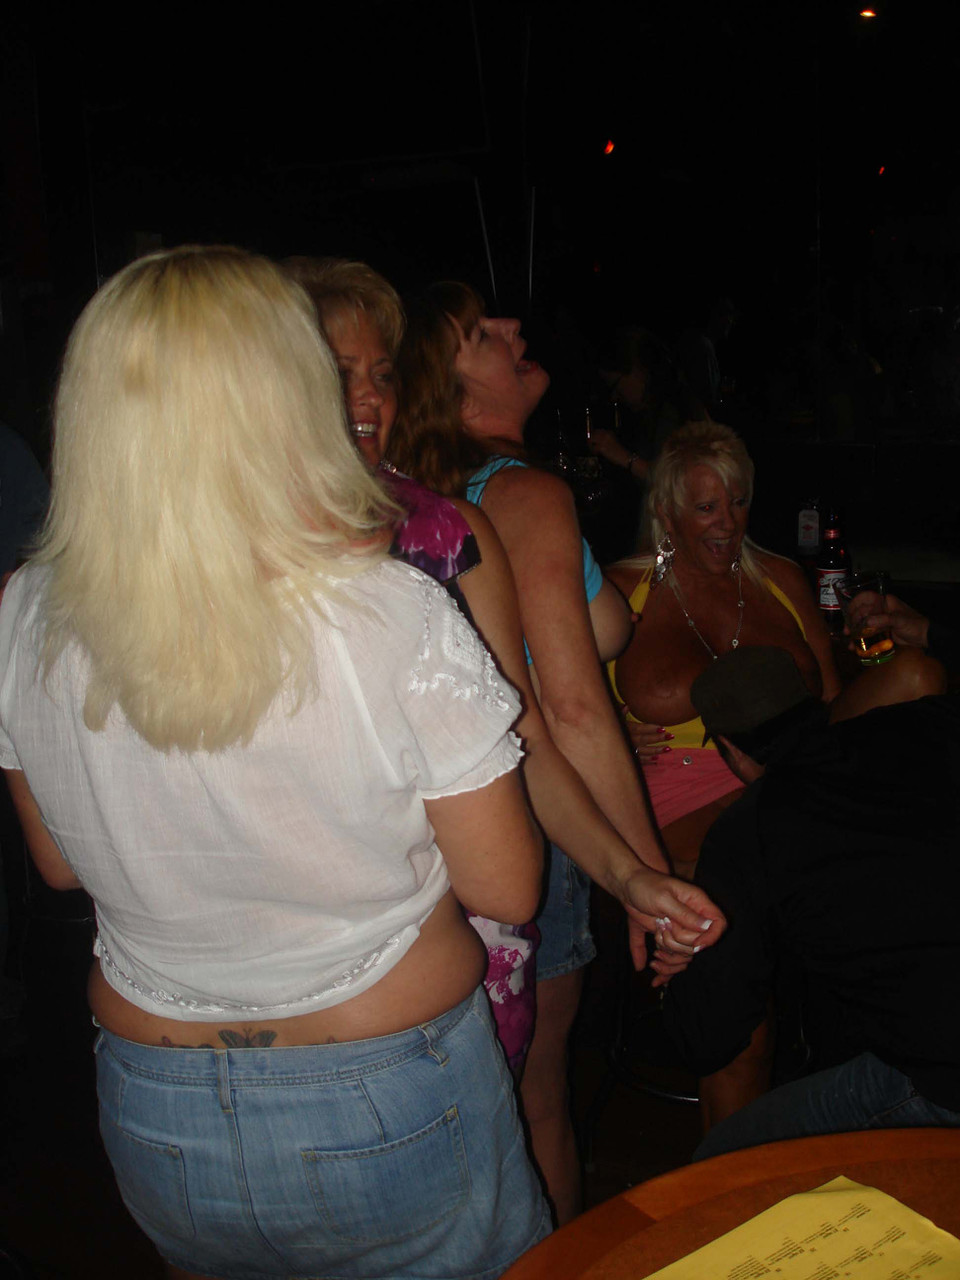 Real Tampa Swingers Dee Delmar, Double Dee, Mandi Mcgraw, Tracy Lick foto porno #424445794 | Real Tampa Swingers Pics, Dee Delmar, Double Dee, Mandi Mcgraw, Tracy Lick, Party, porno ponsel